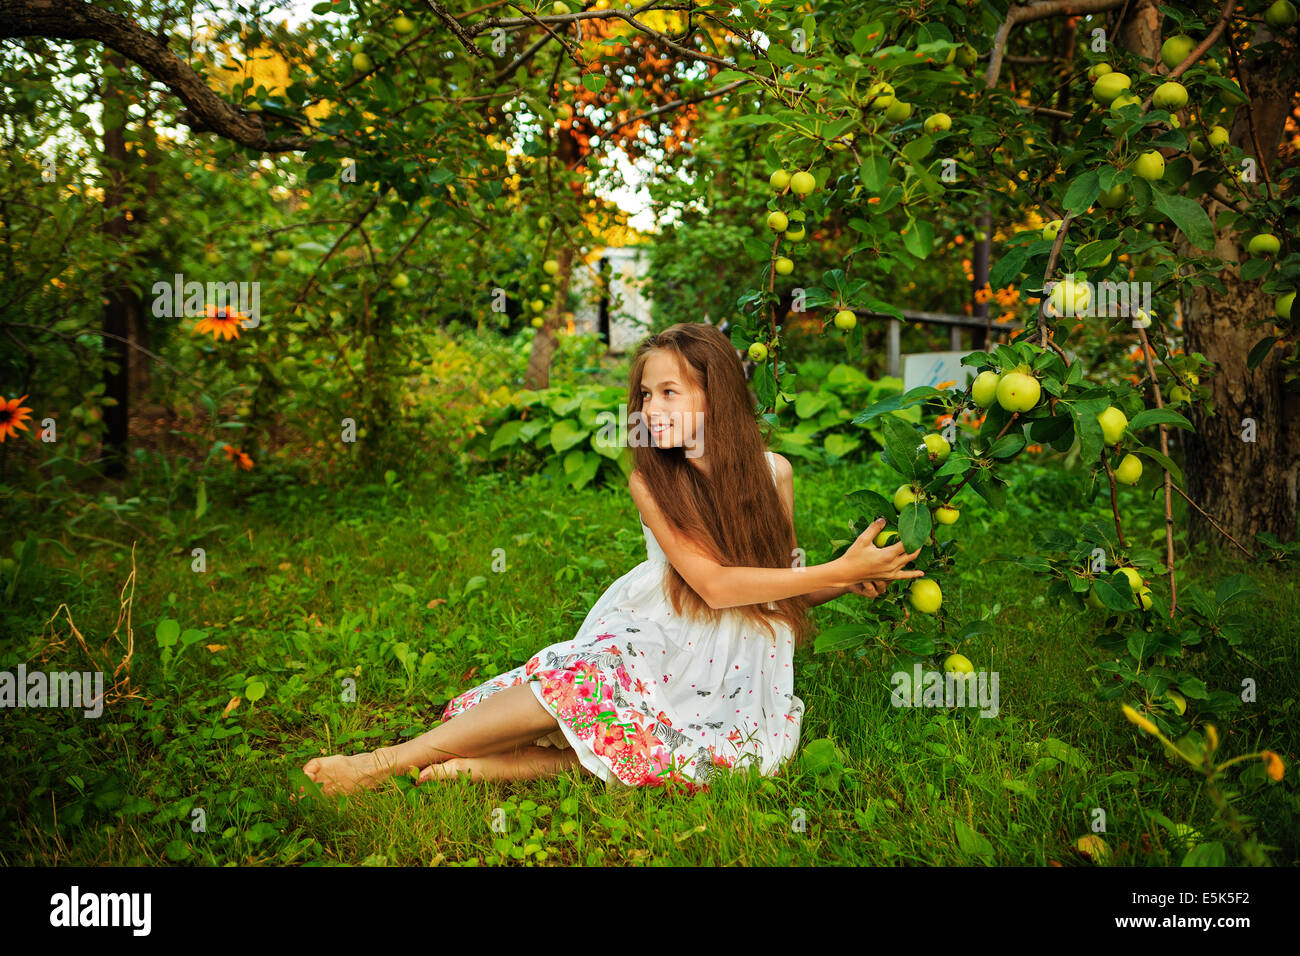 Cute girl marche pieds nus dans le jardin près de l'apple tree Photo Stock  - Alamy